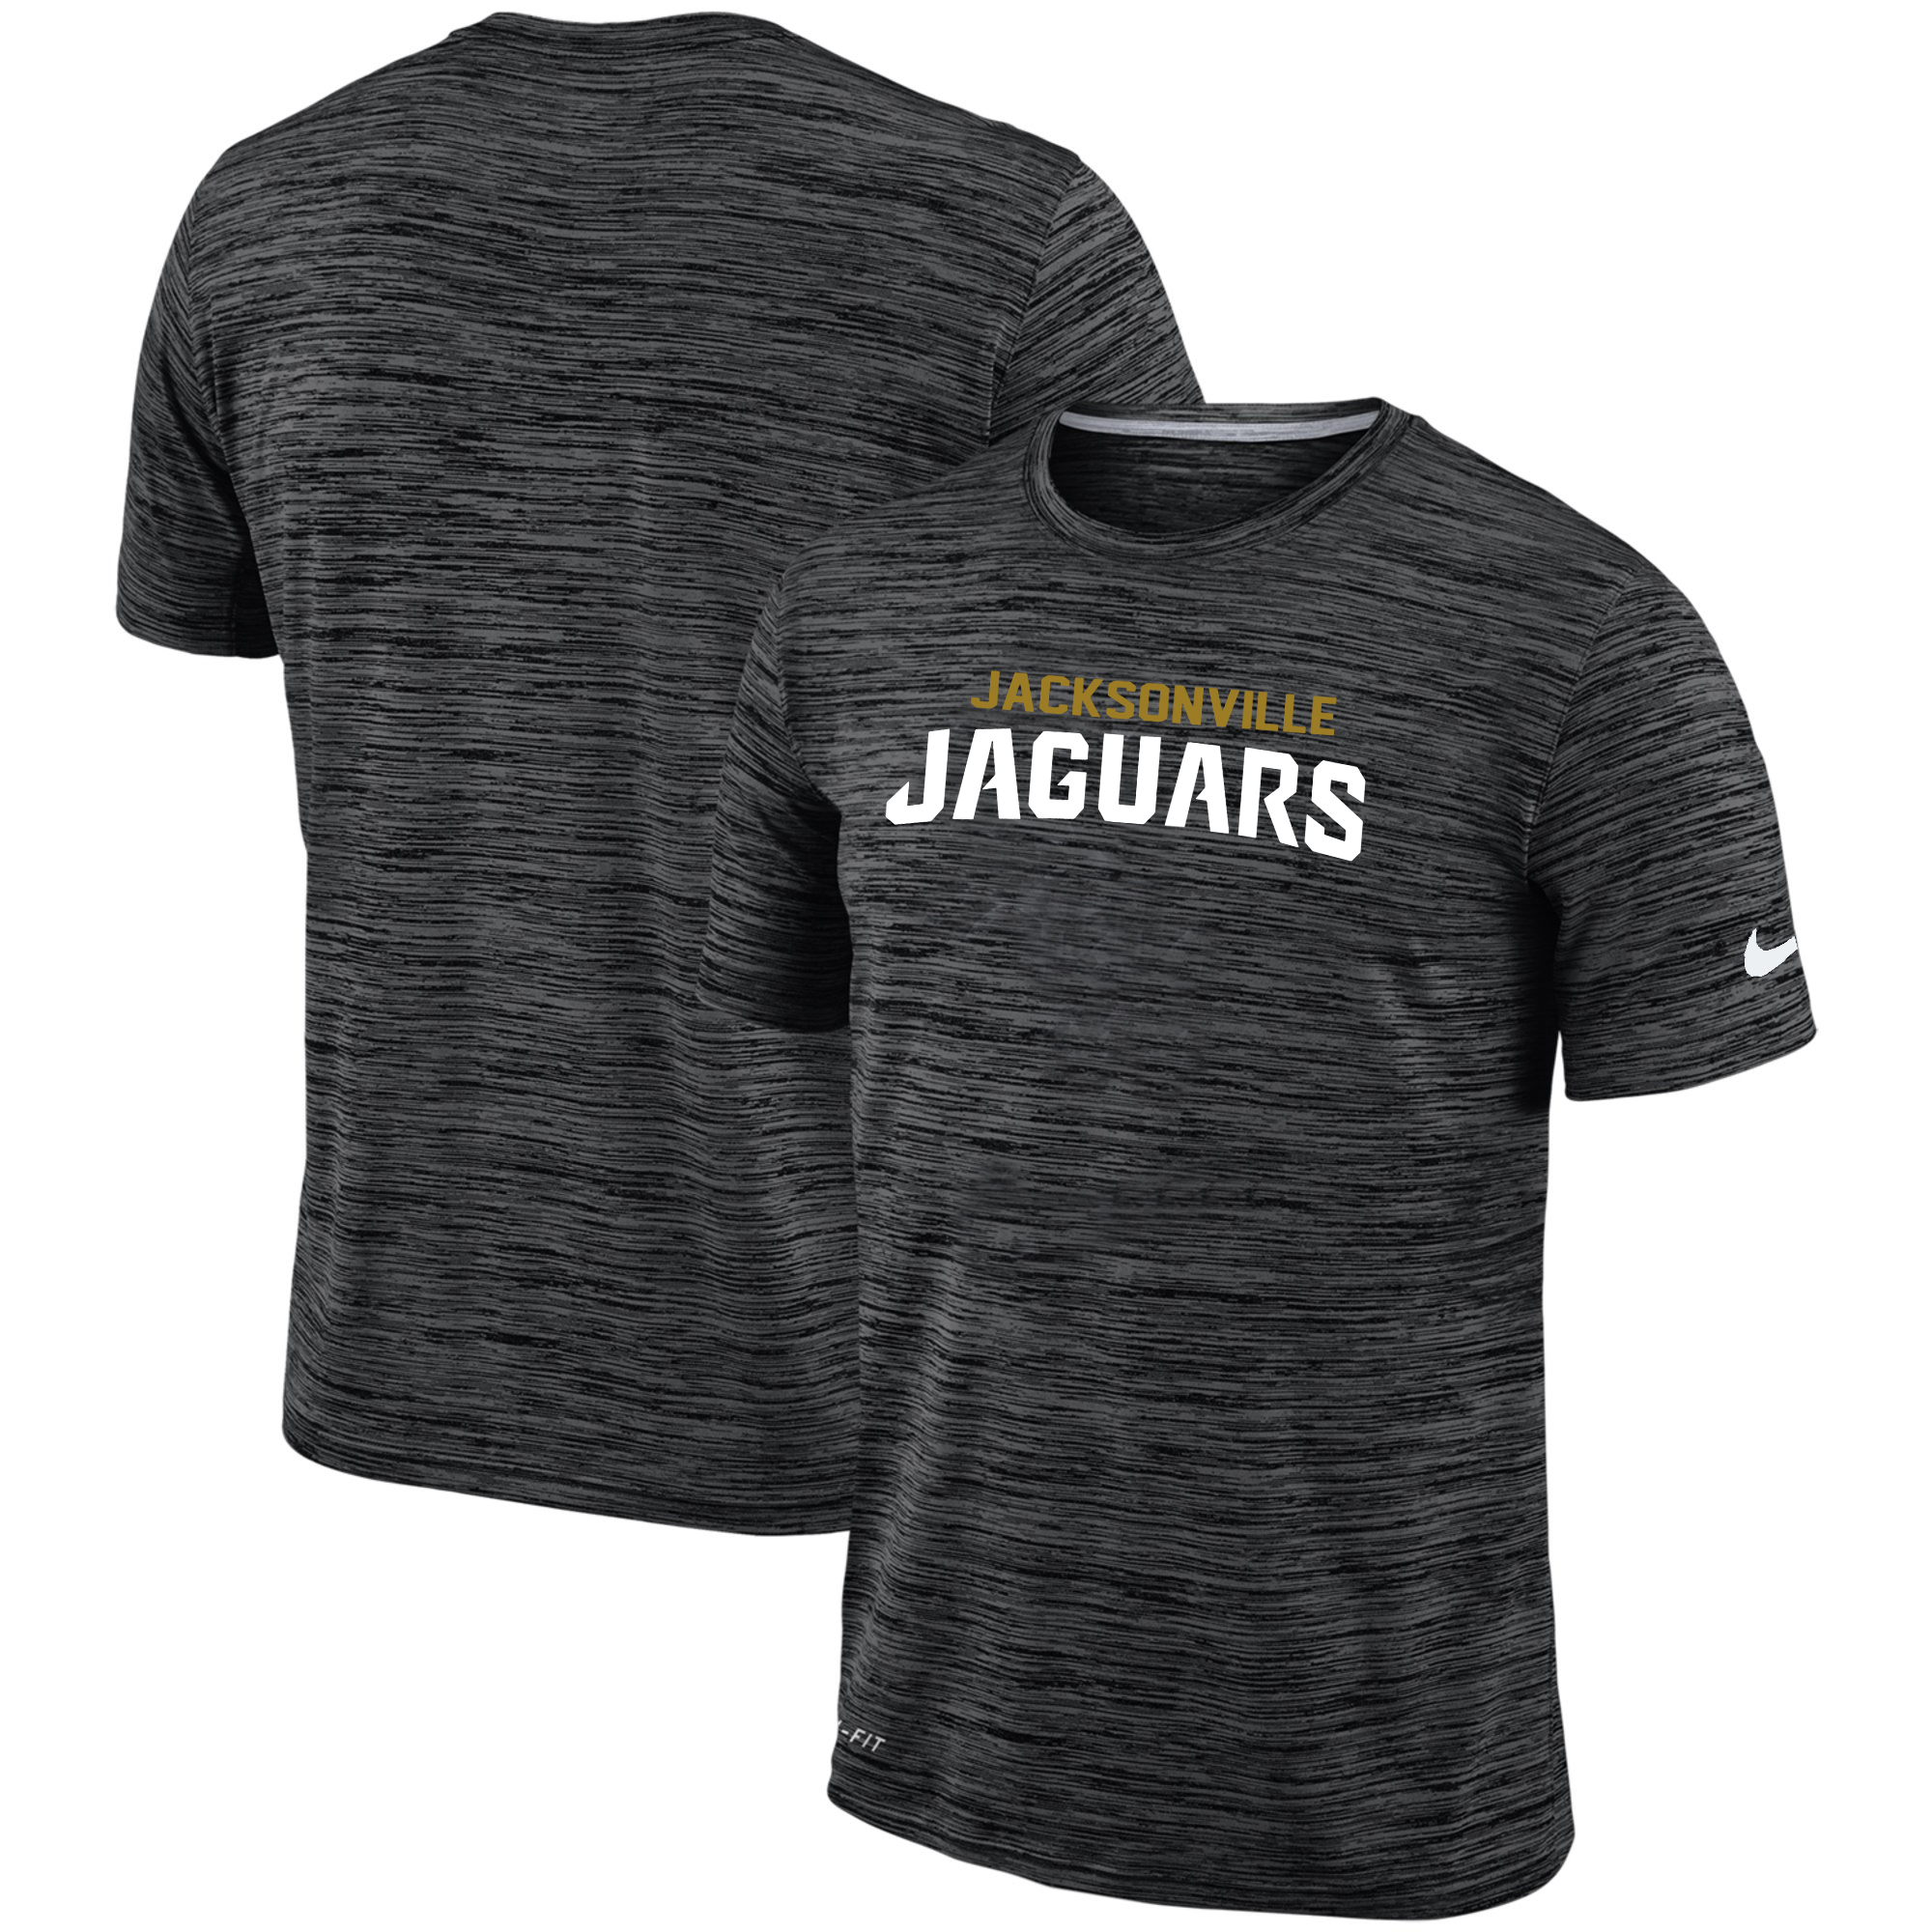 Nike Jacksonville Jaguars Black Velocity Performance T-Shirt - Click Image to Close